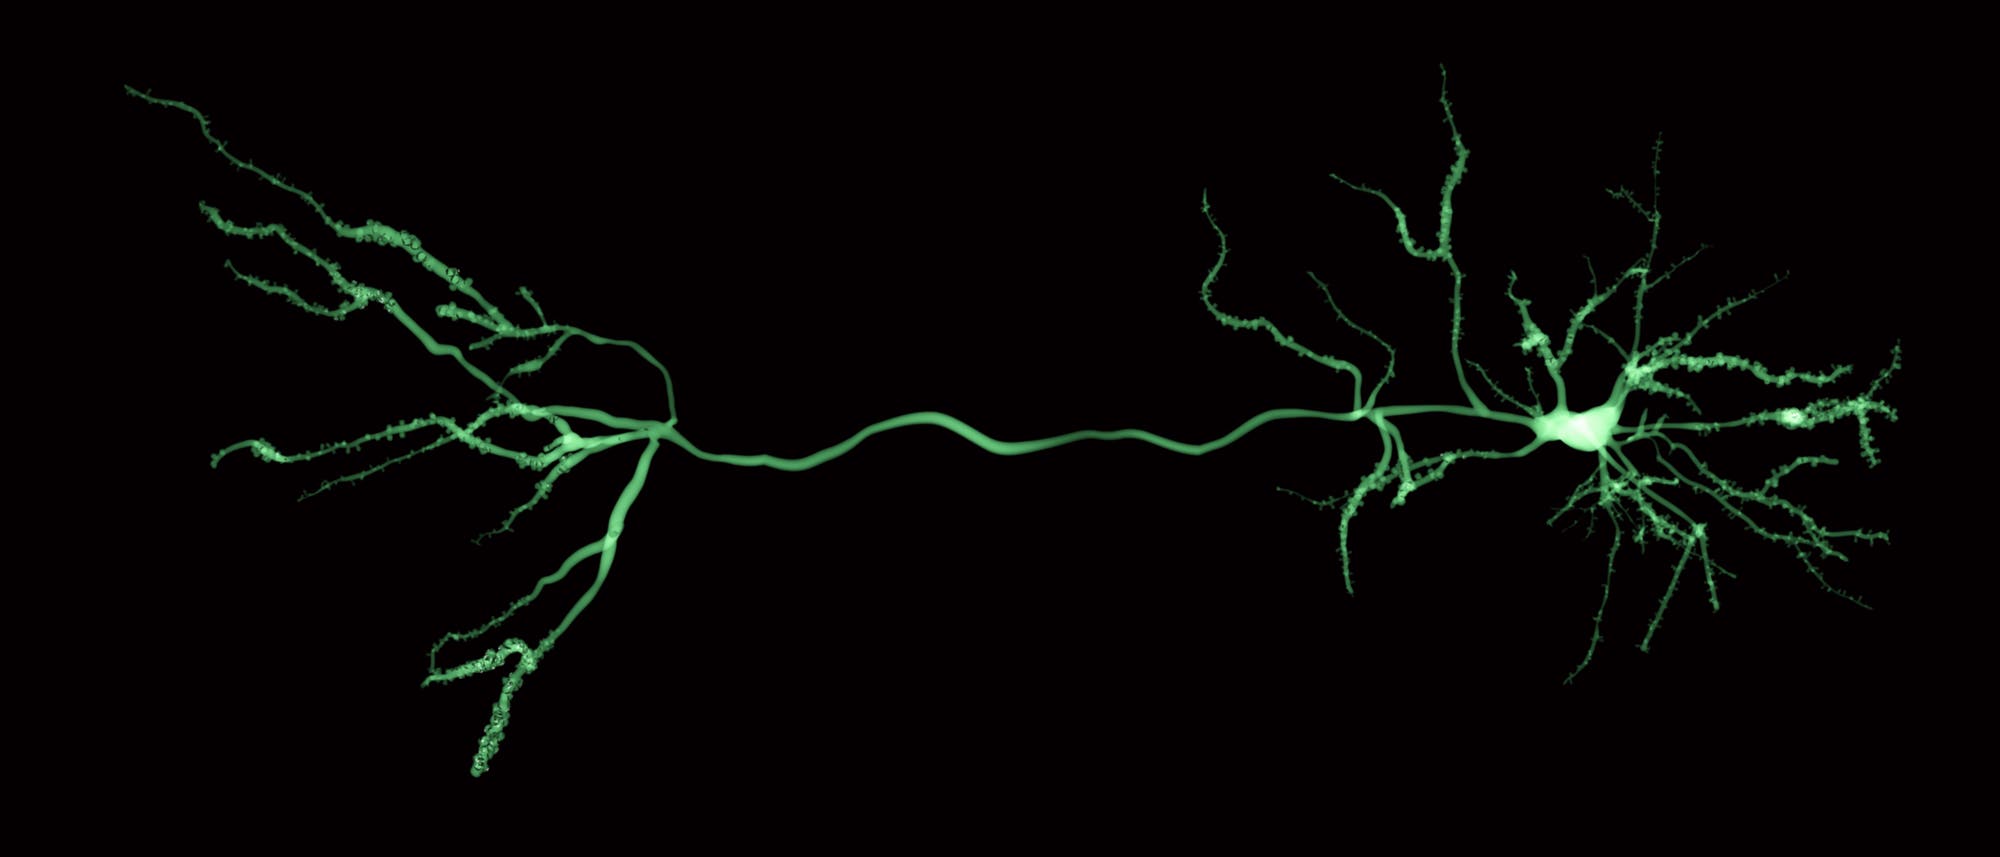 einzelne Nervenzelle, rechts Zellkörper und Dendriten